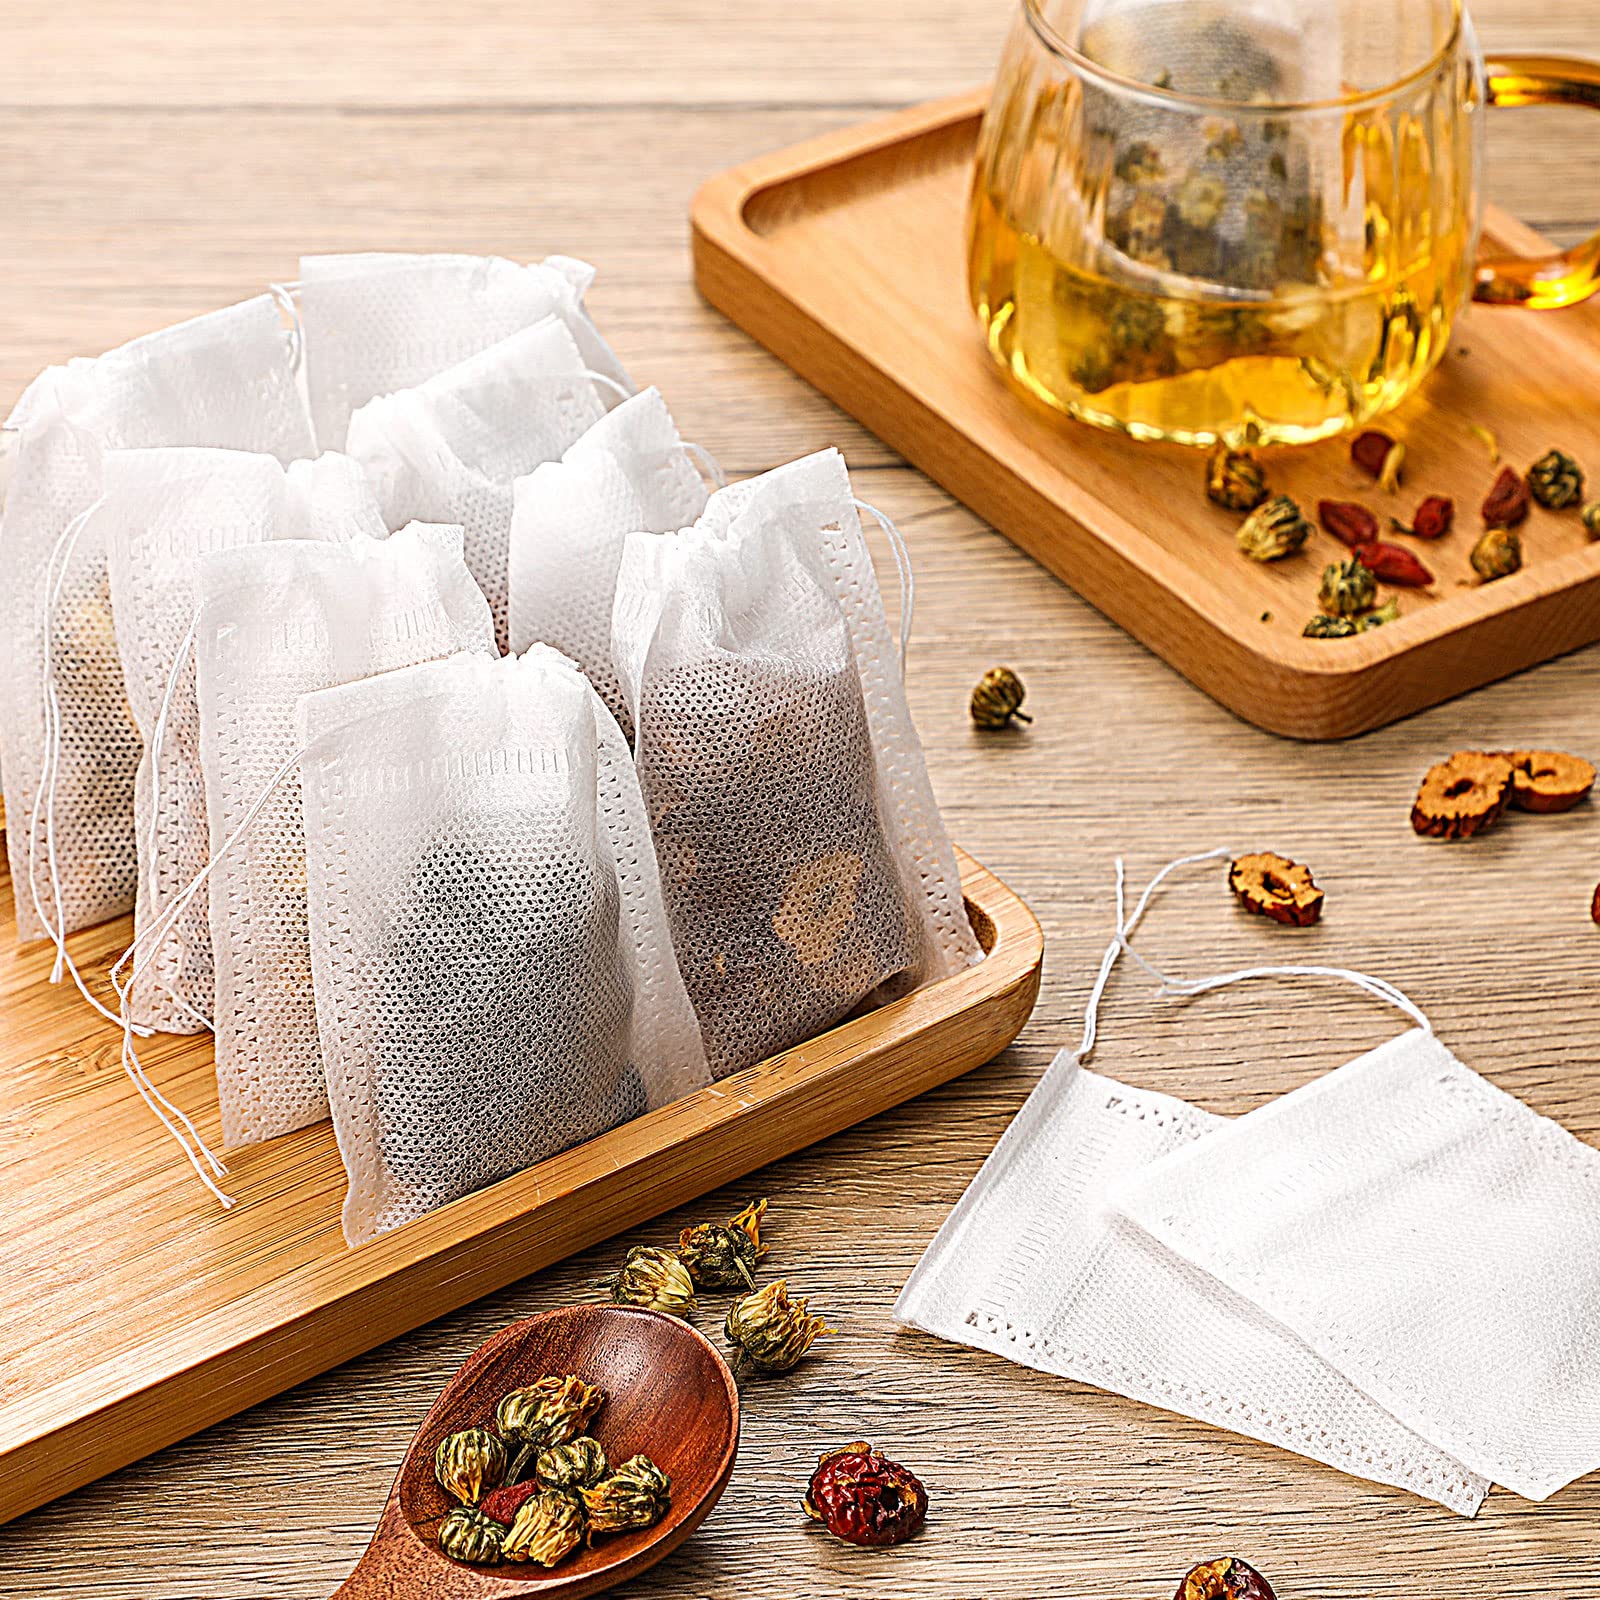 Bolsas de filtro de té, 300 bolsas de té vacías desechables, infusor de té,  bolsas de té con cordón, bolsas de té seguras de material natural, para